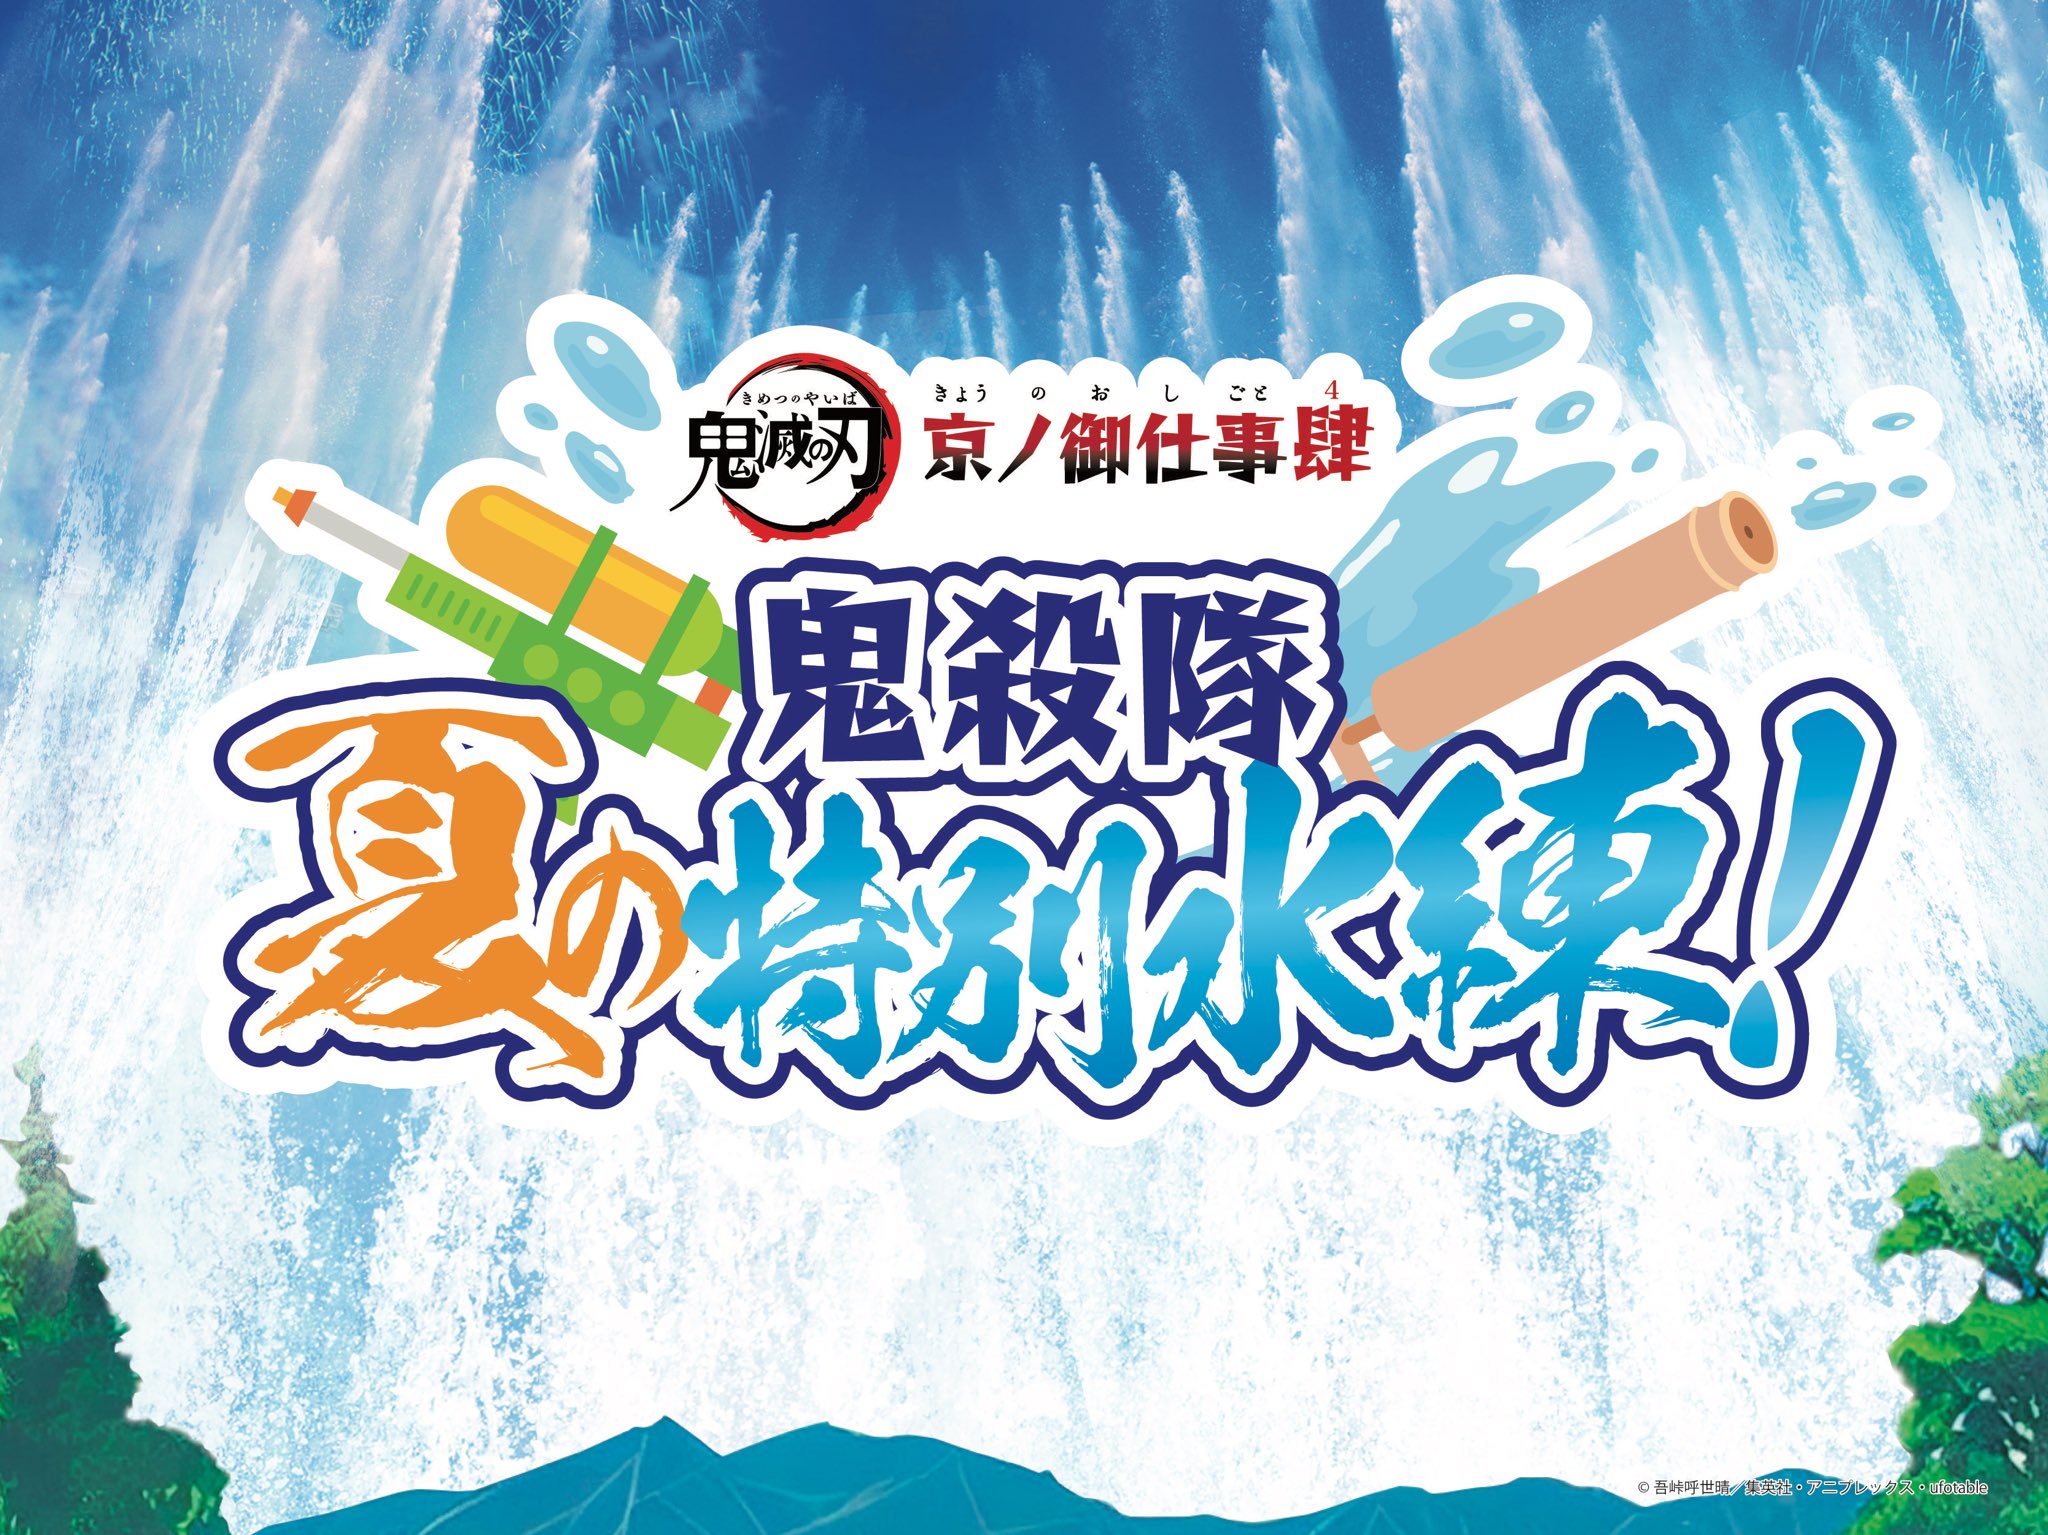 「鬼滅の刃×東映太秦映画村」7月15日よりコラボ第4弾開催！刀と水がテーマのびしょ濡れイベント